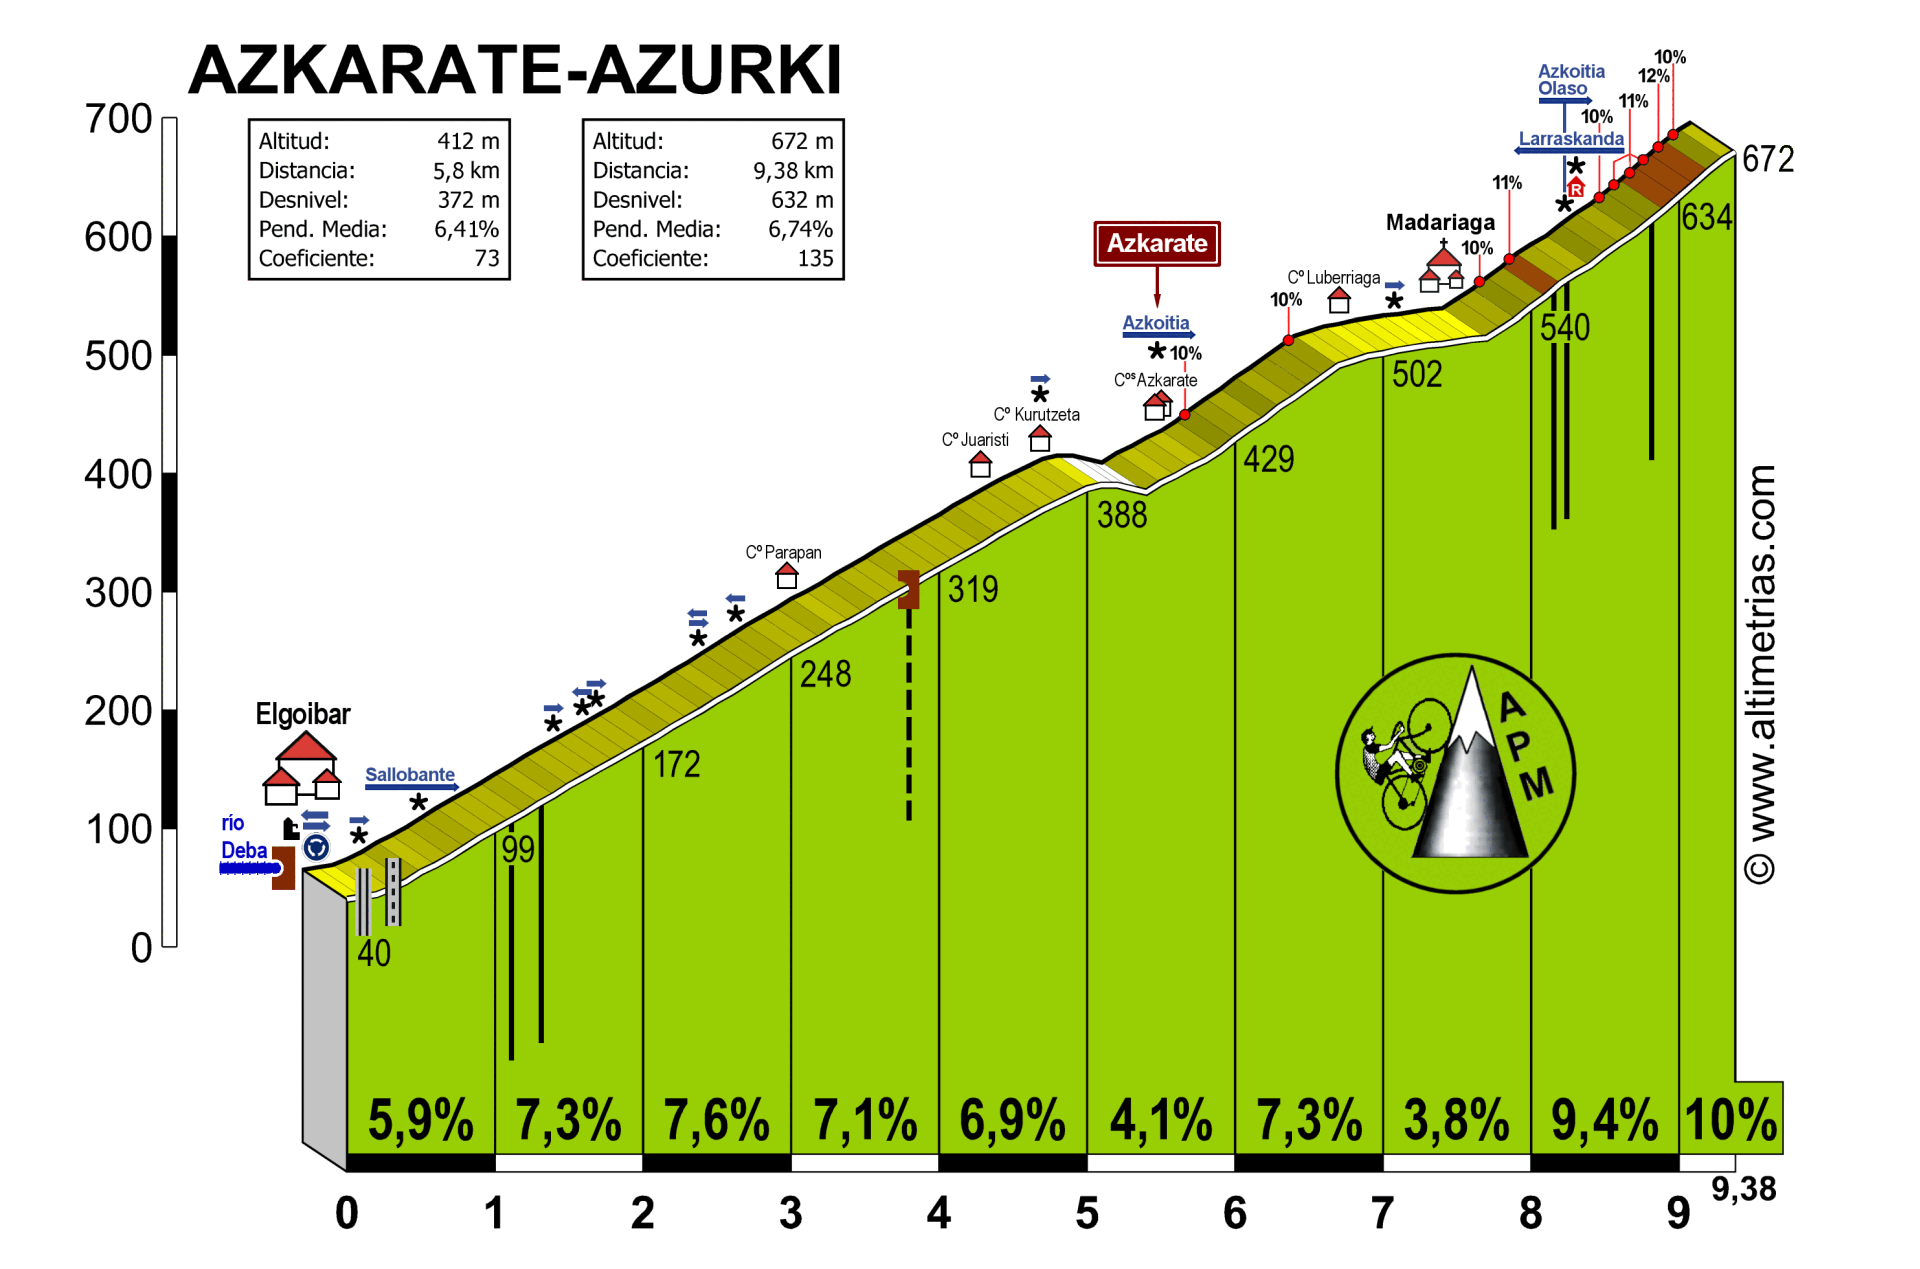 Azkarate-Azurki